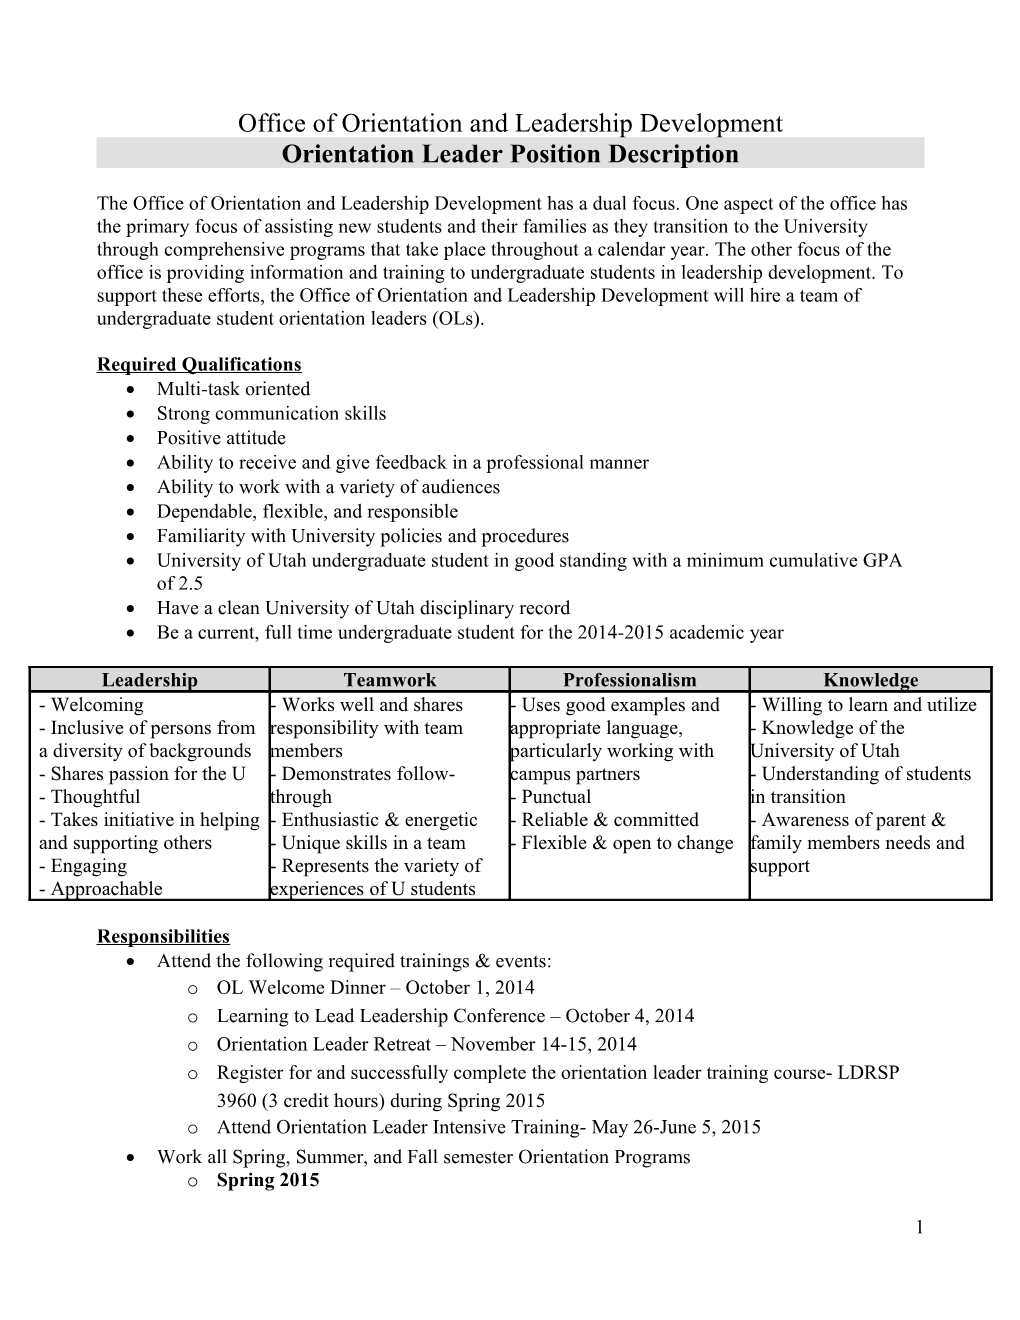 Orientation Leader Position Description 2015